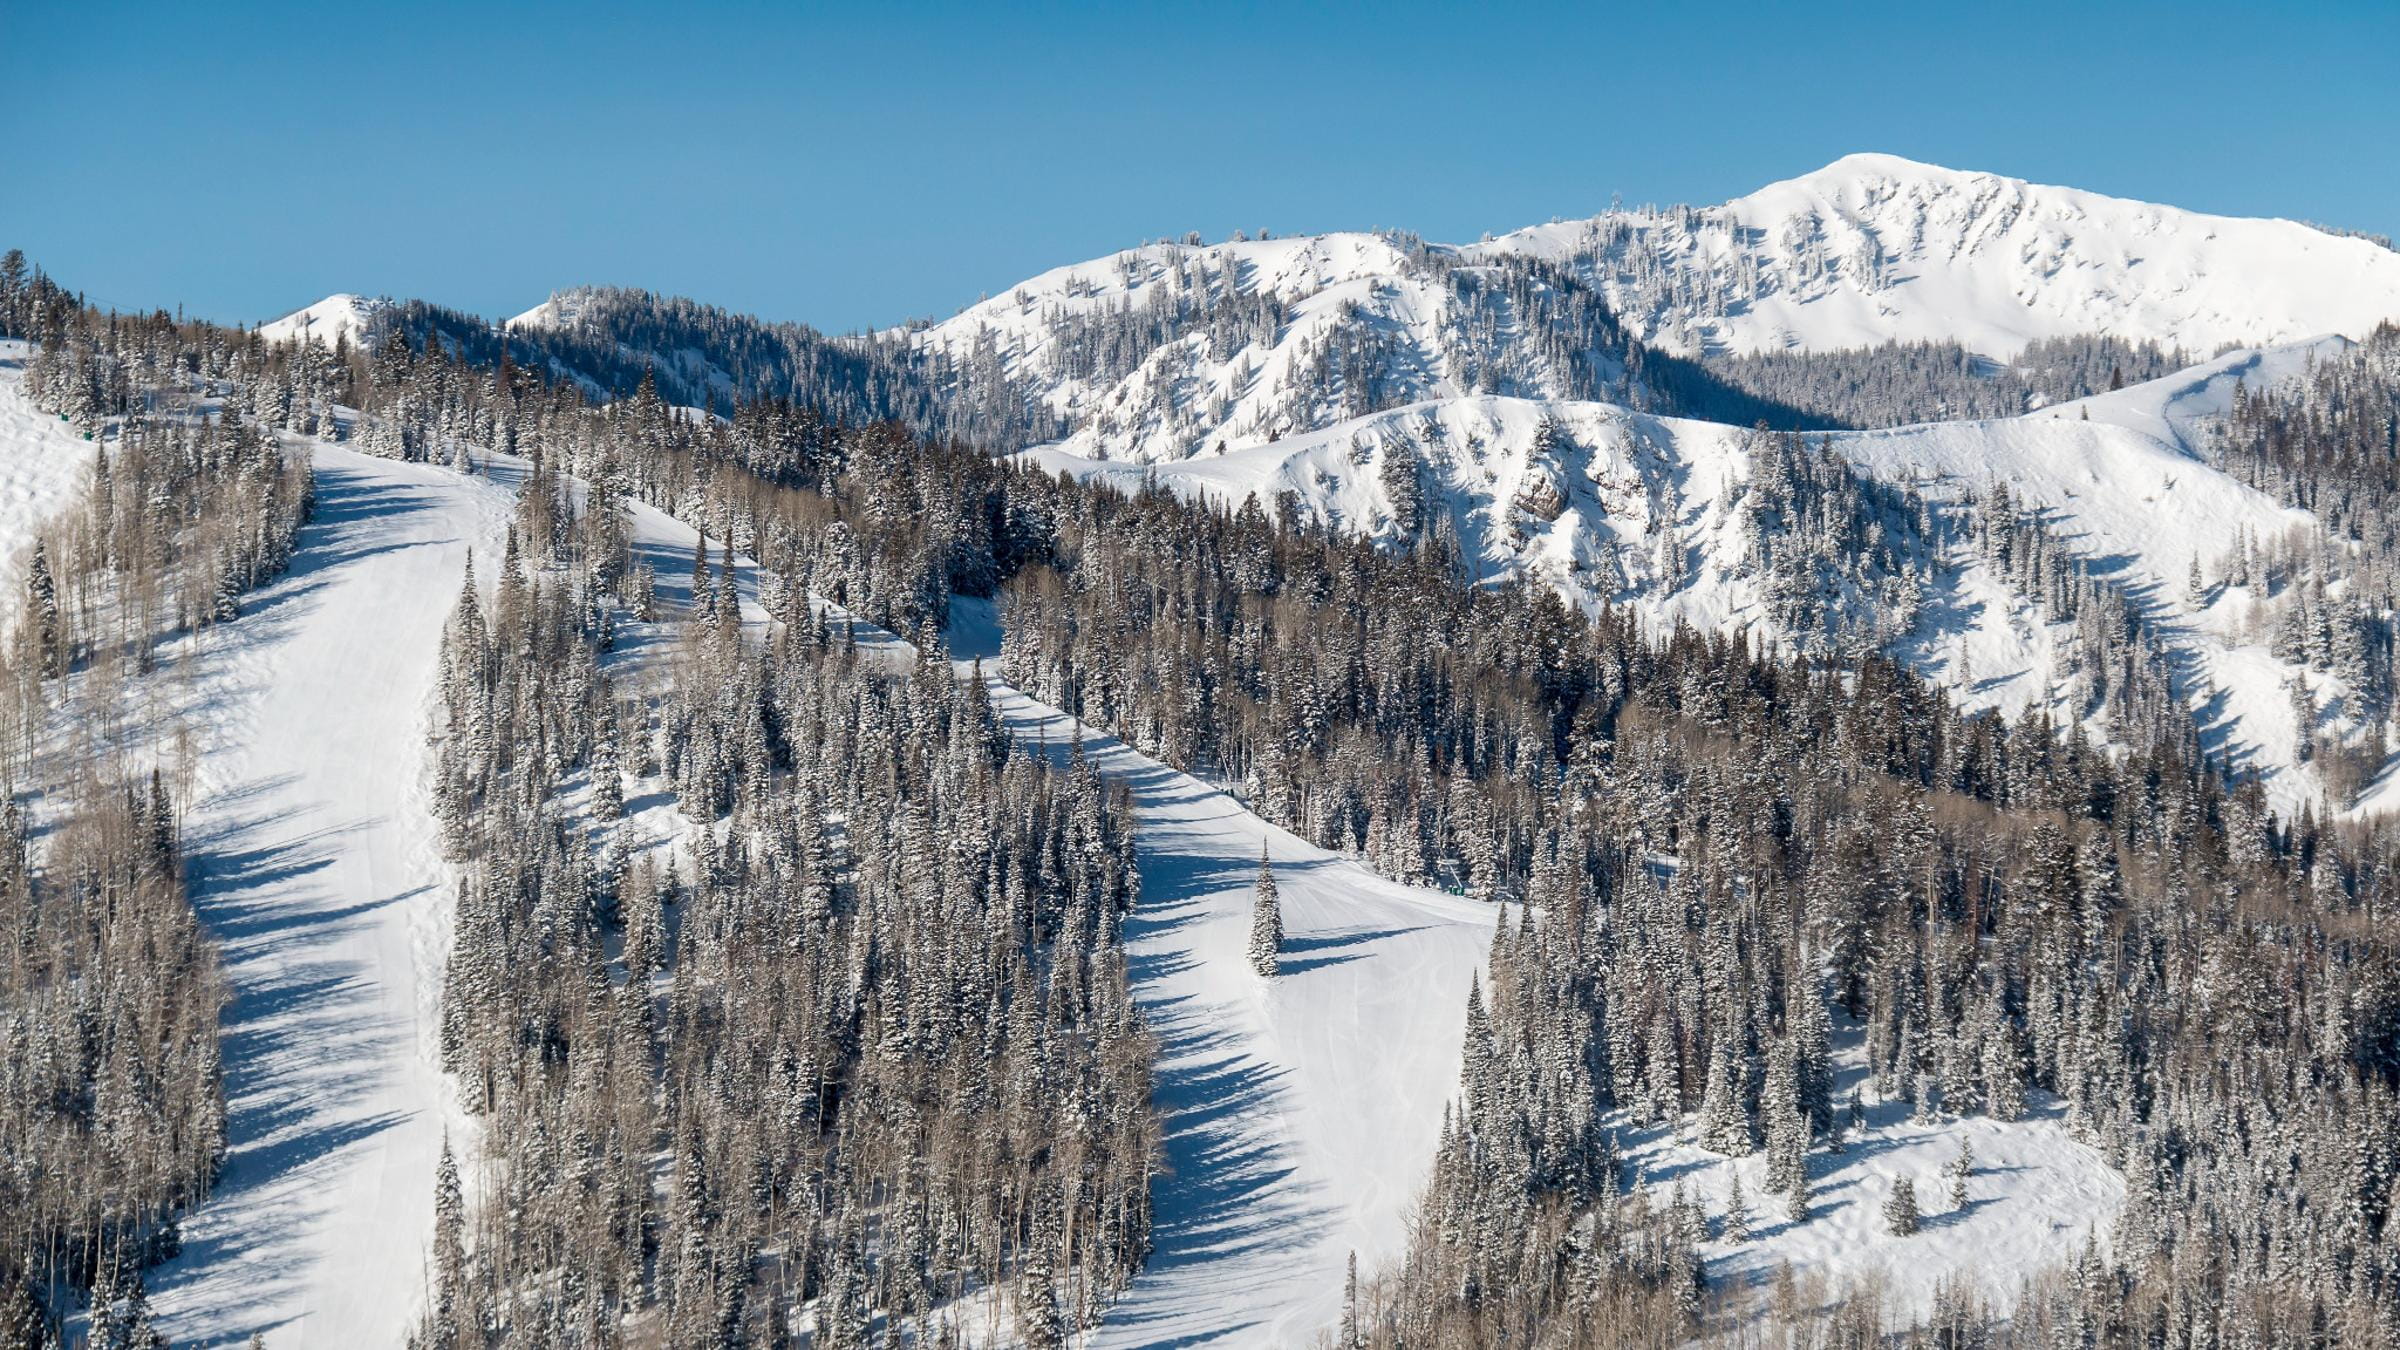 Winter scenic of flagstaff mountain at Deer Valley Resort